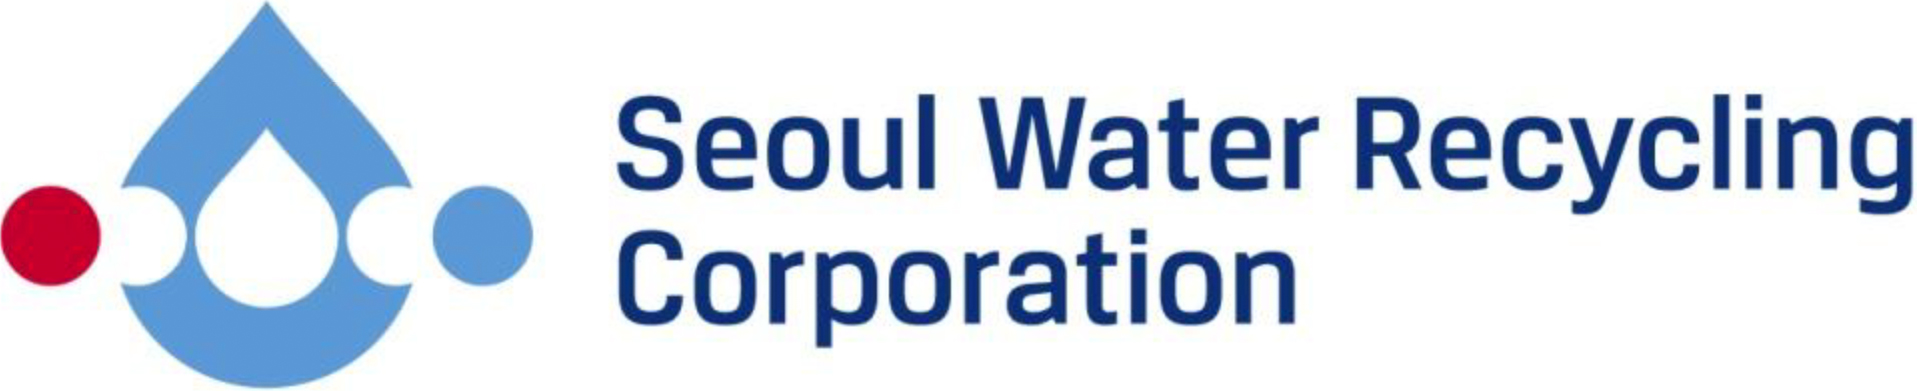 서울물재생시설공단 시그니쳐 좌우조합A 영문(Seoul Water Recycling Corporation)